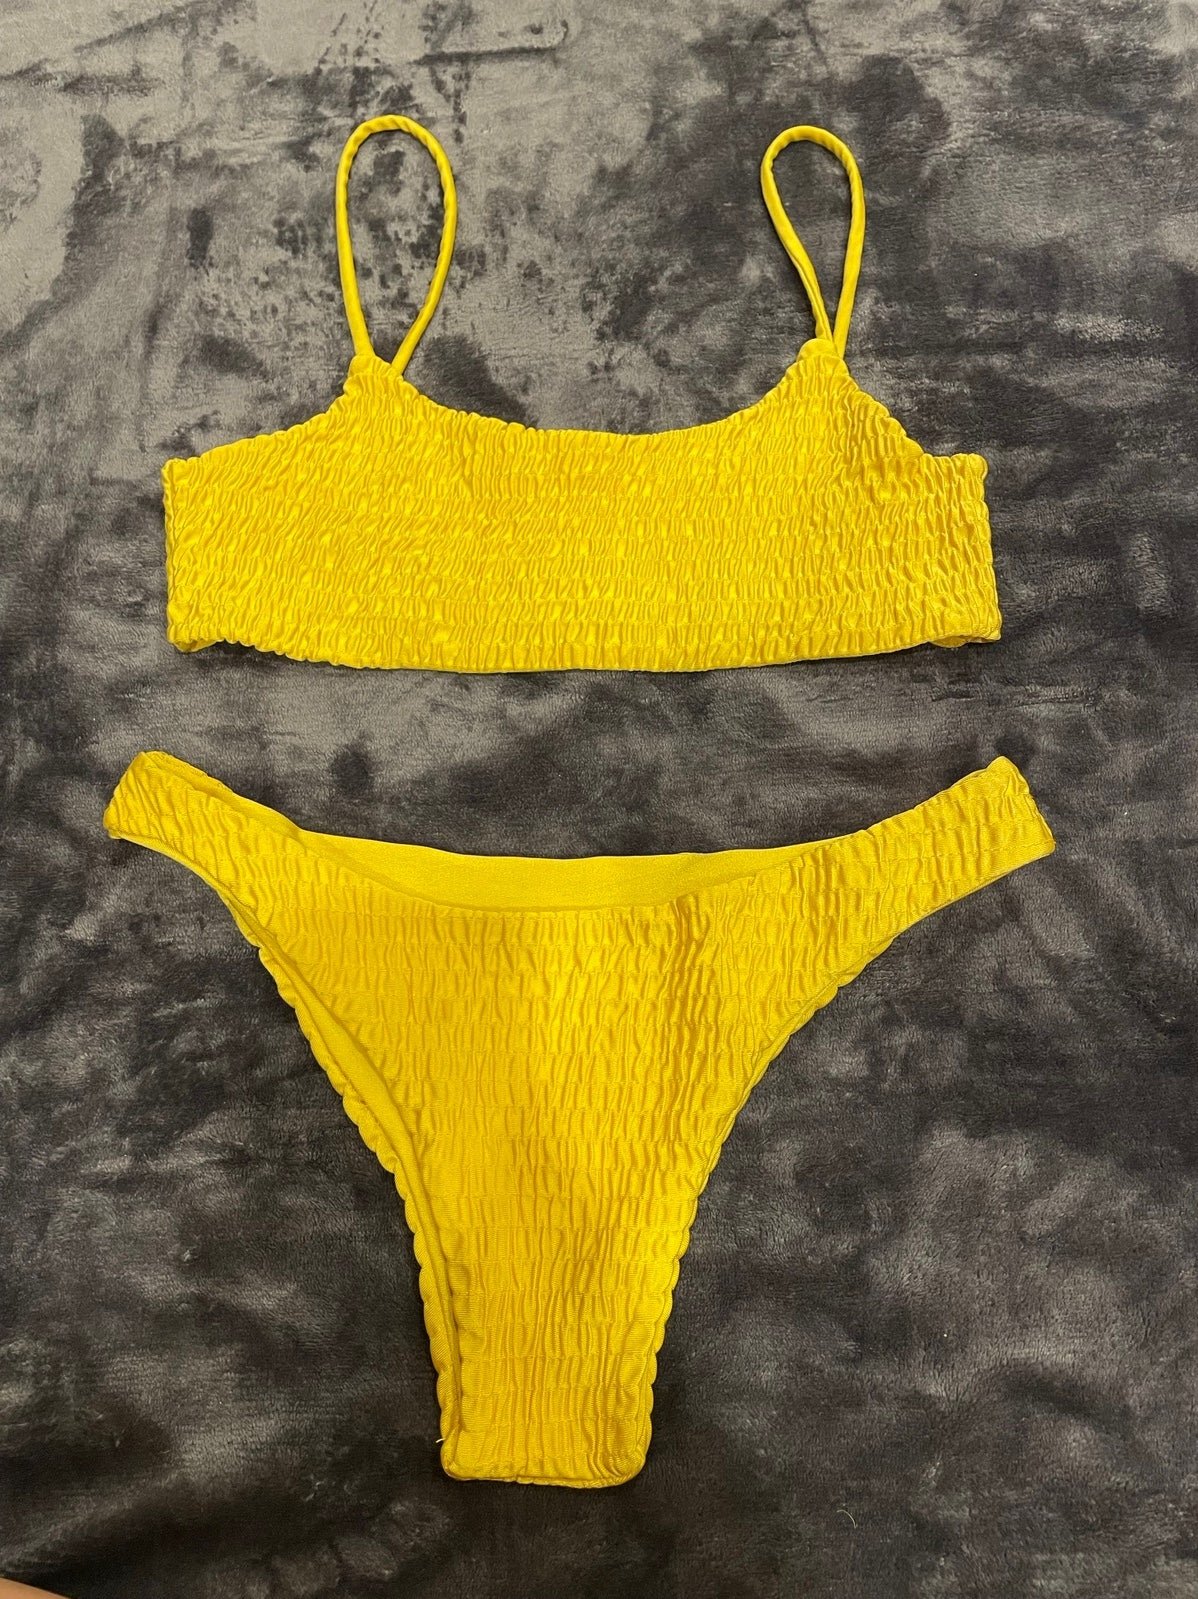 Stylish Yellow Ribbed Bikini HMgoIrtf7 Cool